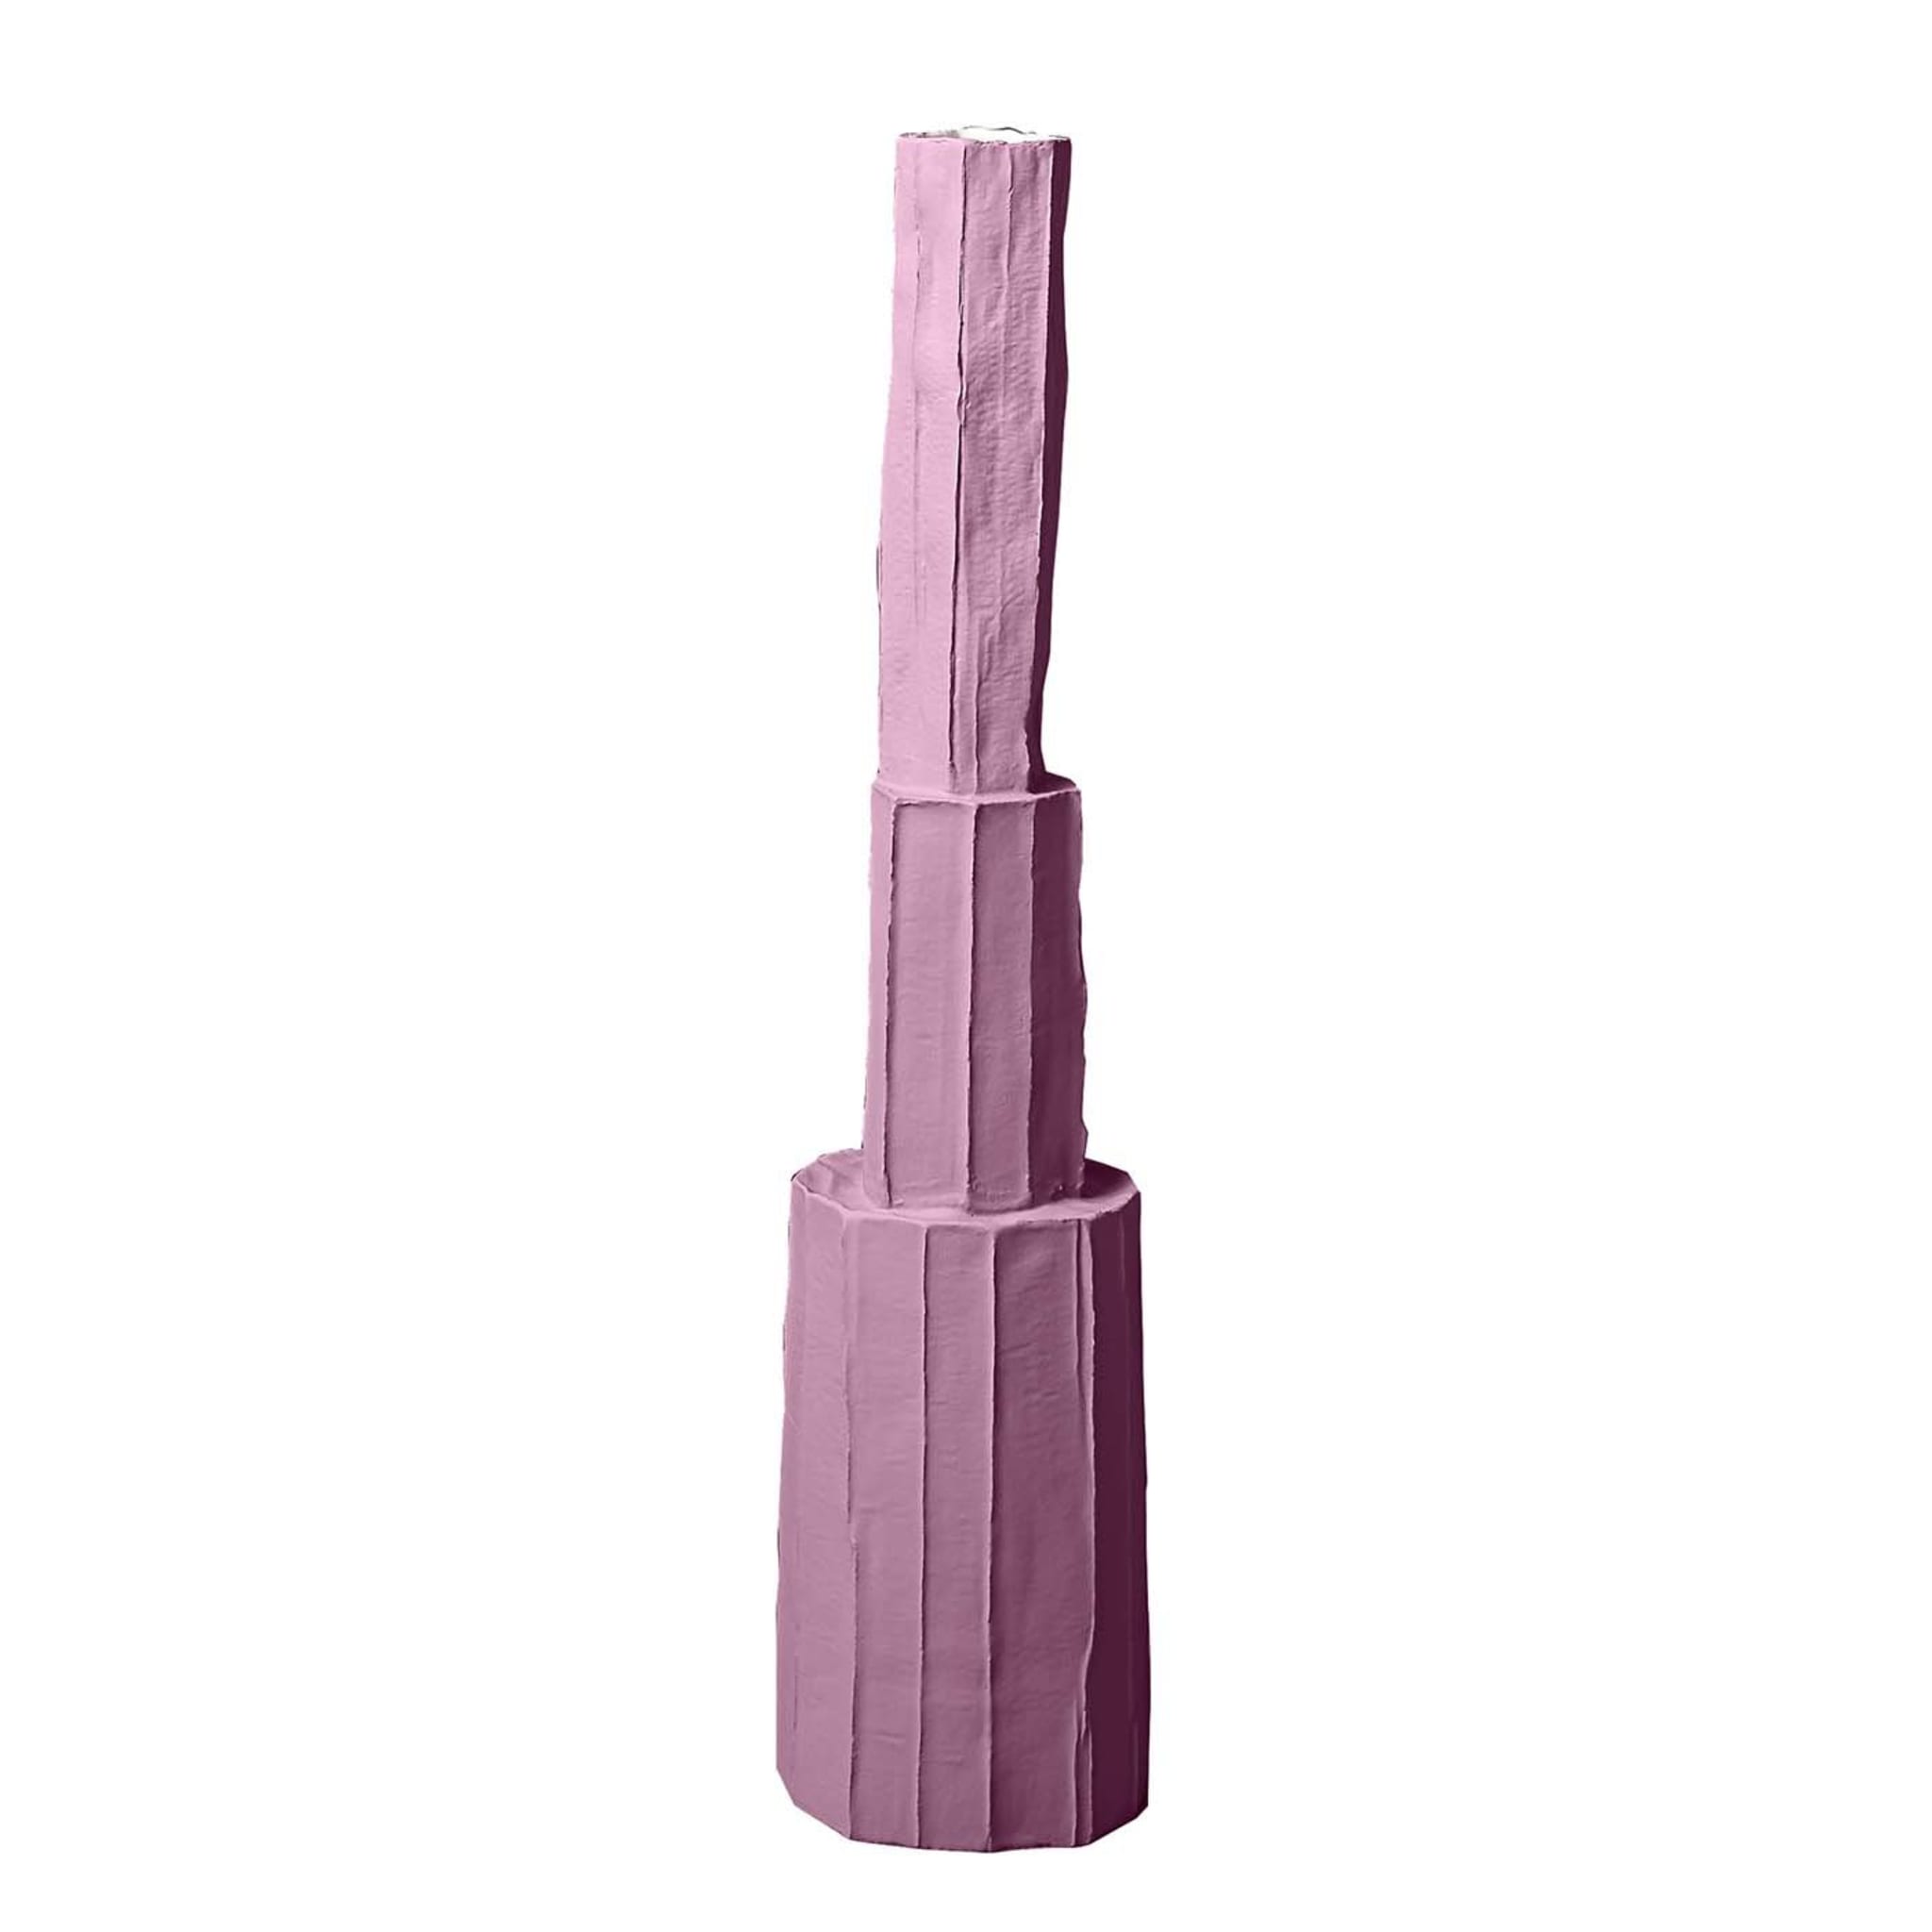 Pistillo Purple Decorative Vase - Main view